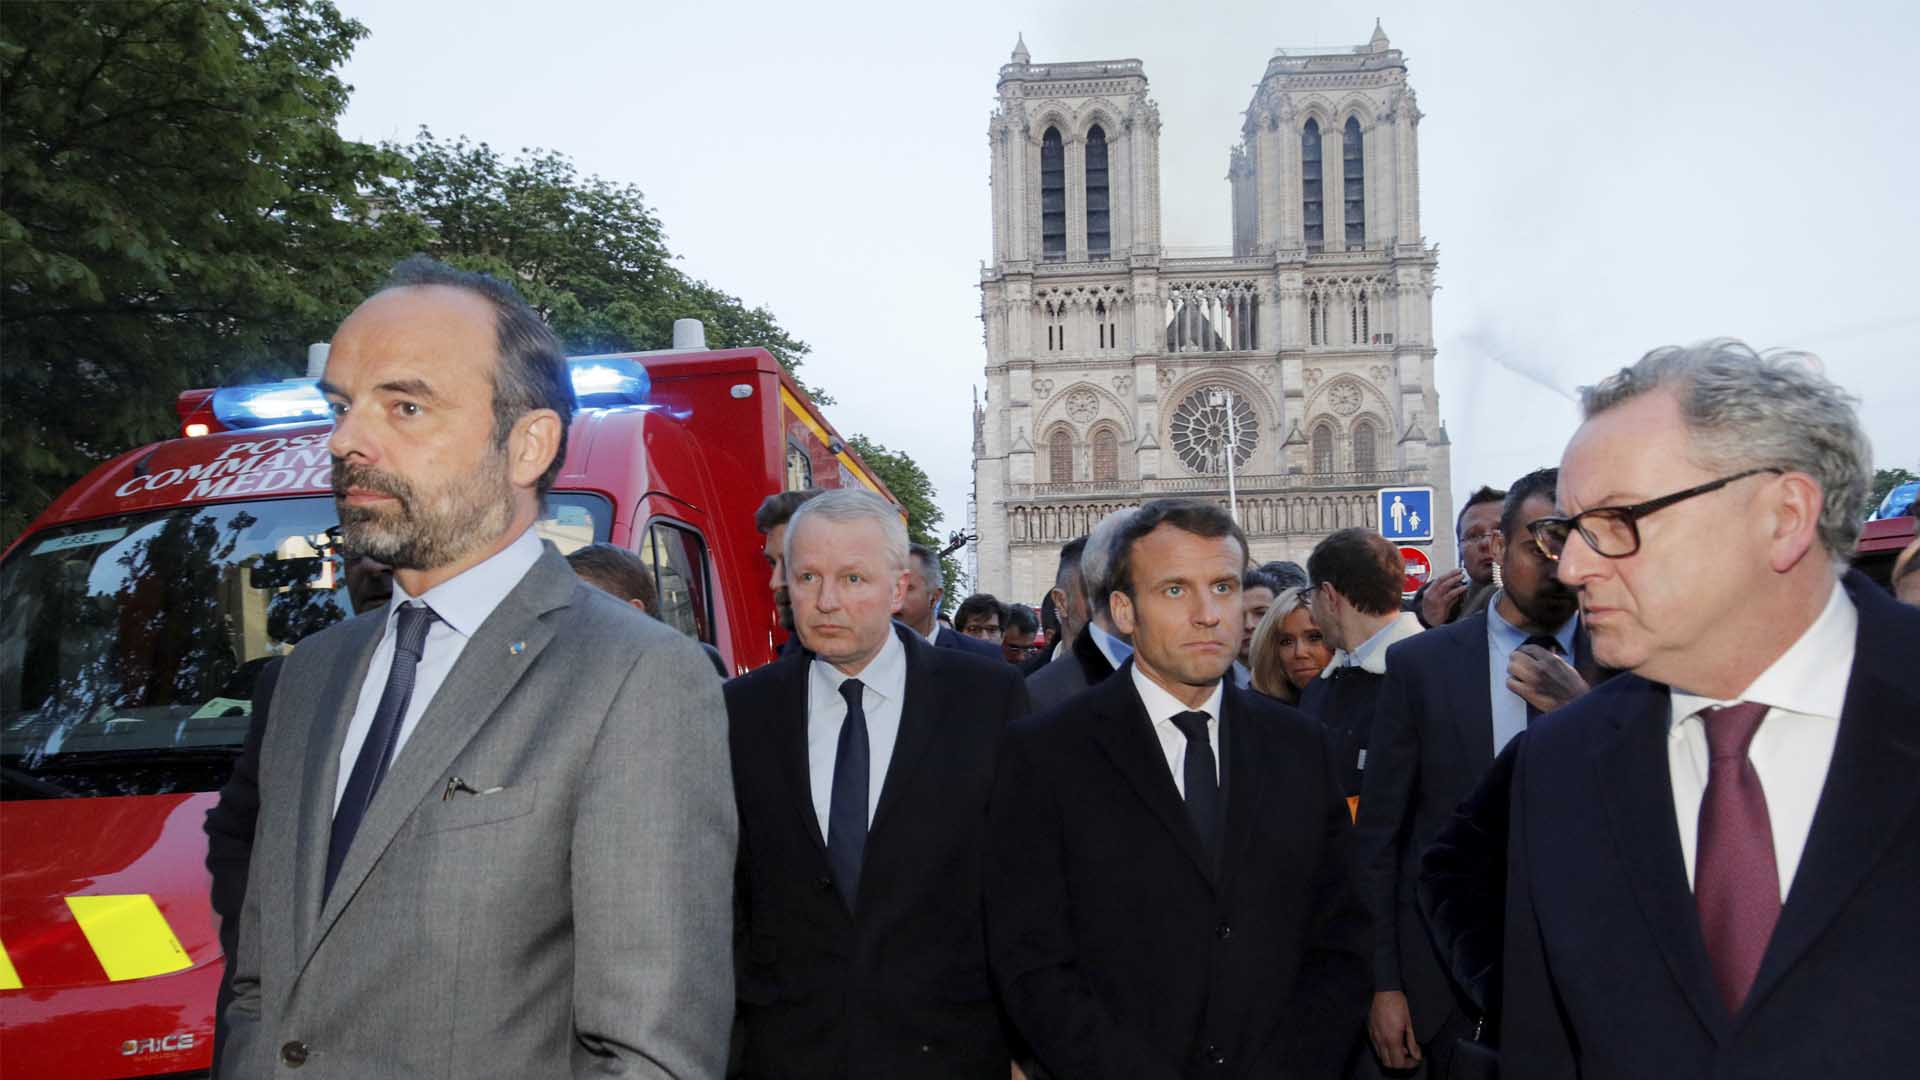 Macron quiere reconstruir en cinco años una Notre Dame "aún más bella"